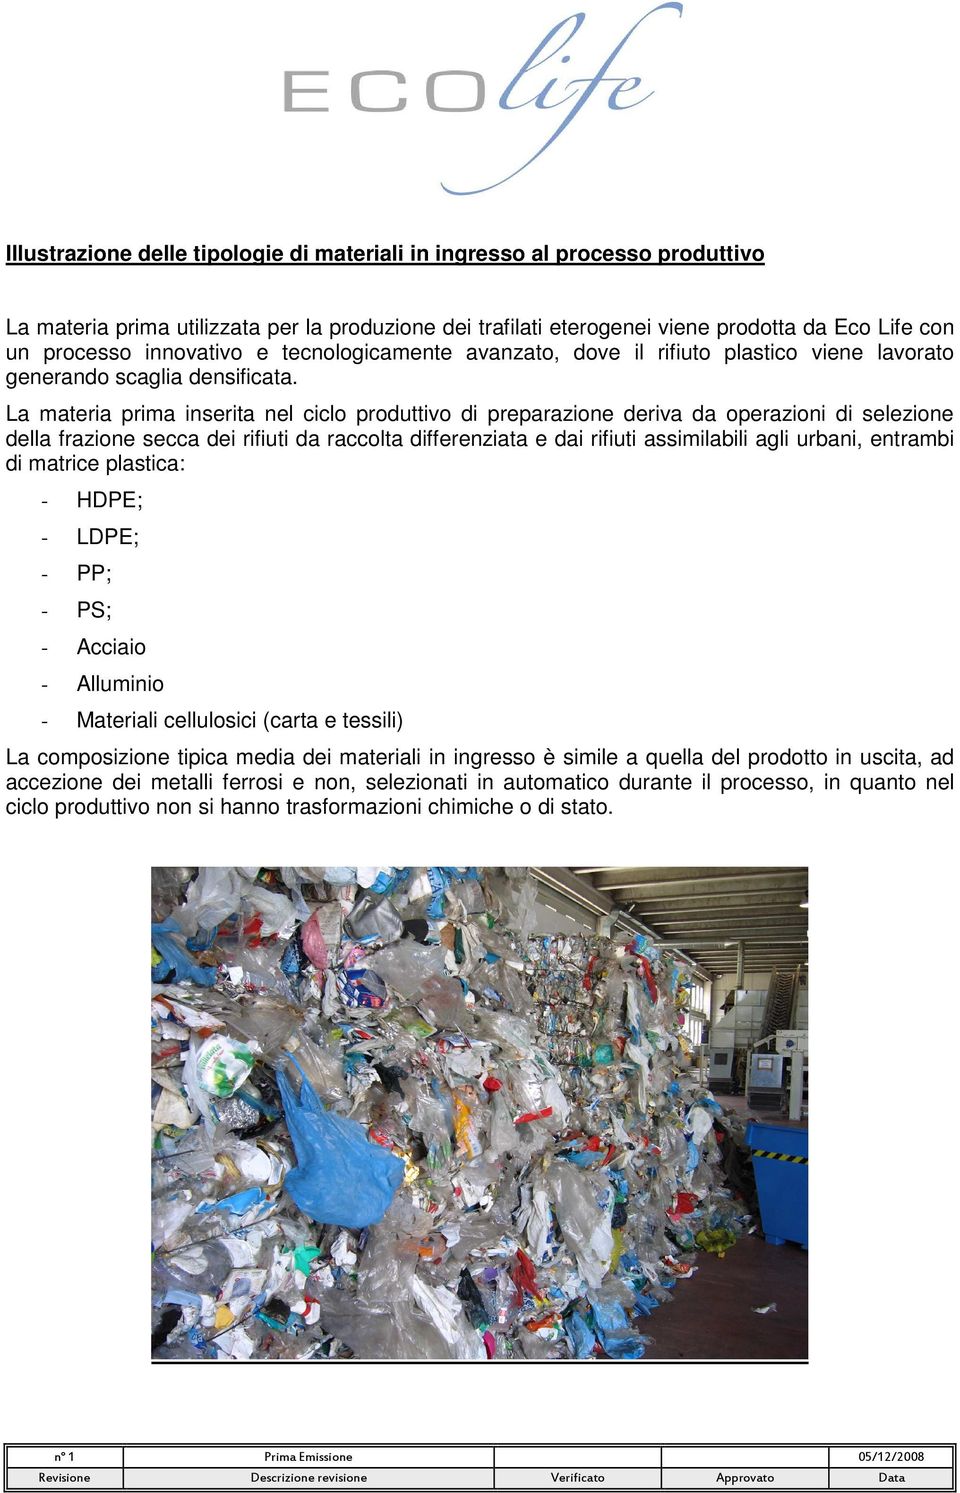 La materia prima inserita nel ciclo produttivo di preparazione deriva da operazioni di selezione della frazione secca dei rifiuti da raccolta differenziata e dai rifiuti assimilabili agli urbani,